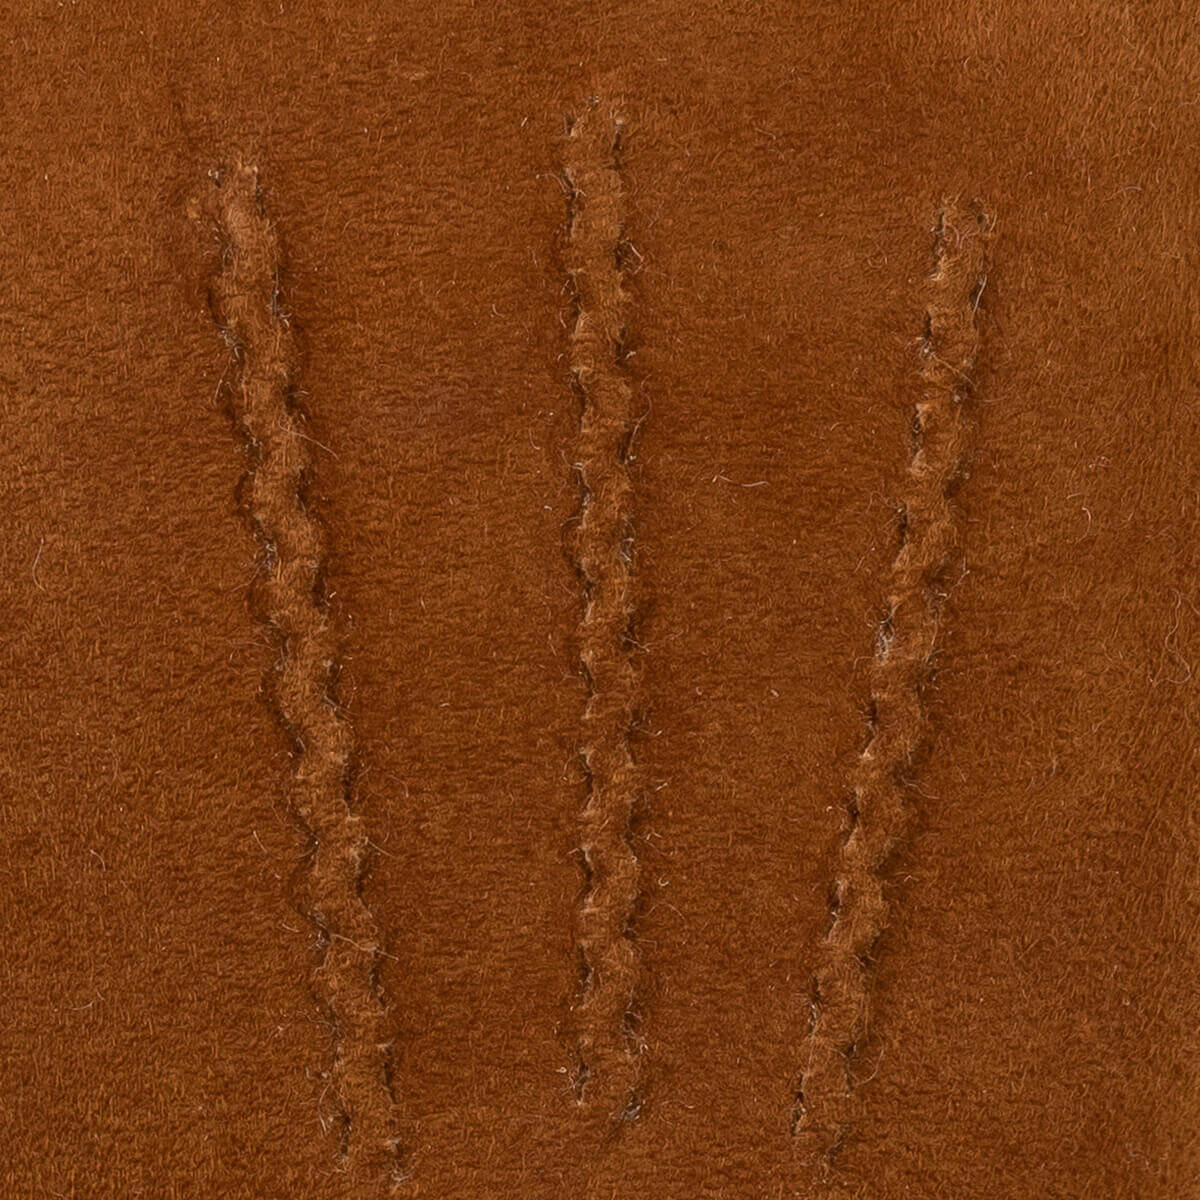 Gants en daim marron pour hommes - doublés chauds - Gants en cuir haut de gamme - Conçus à Amsterdam - Schwartz & von Halen® - 4